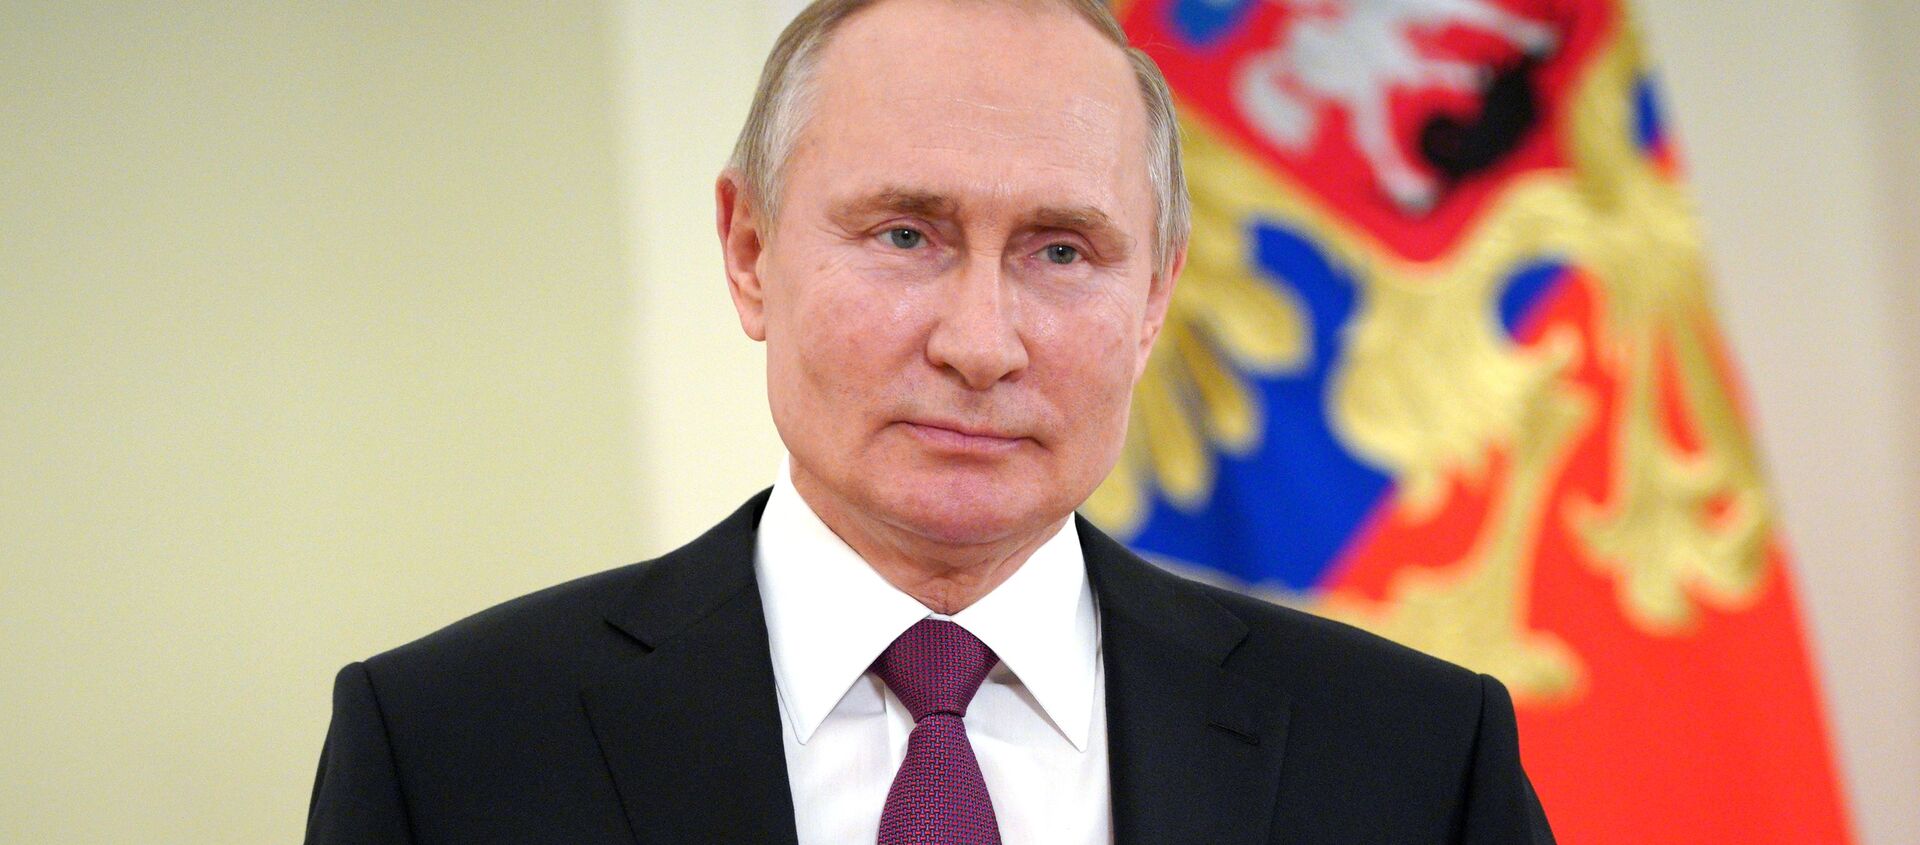 Президент России Владимир Путин, архивное фото - Sputnik Беларусь, 1920, 16.04.2021